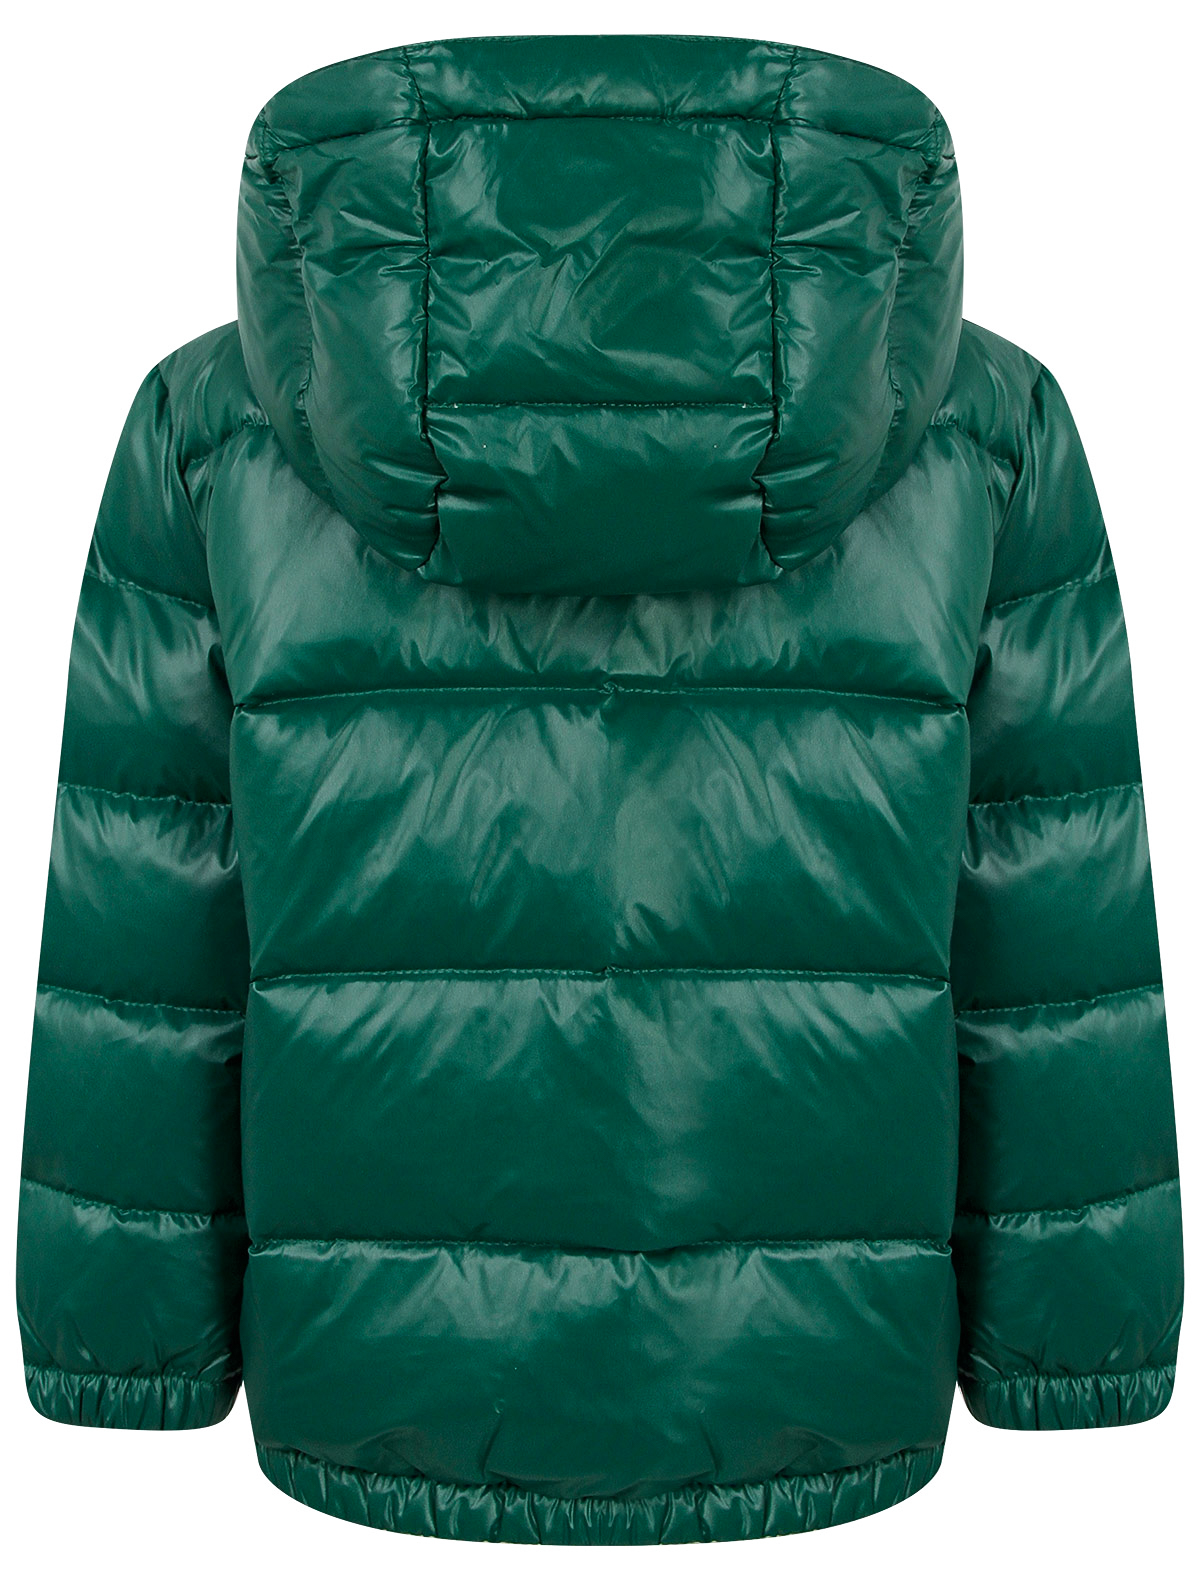 Куртка Ralph Lauren 2263595, цвет зеленый, размер 4 1074519083709 - фото 3